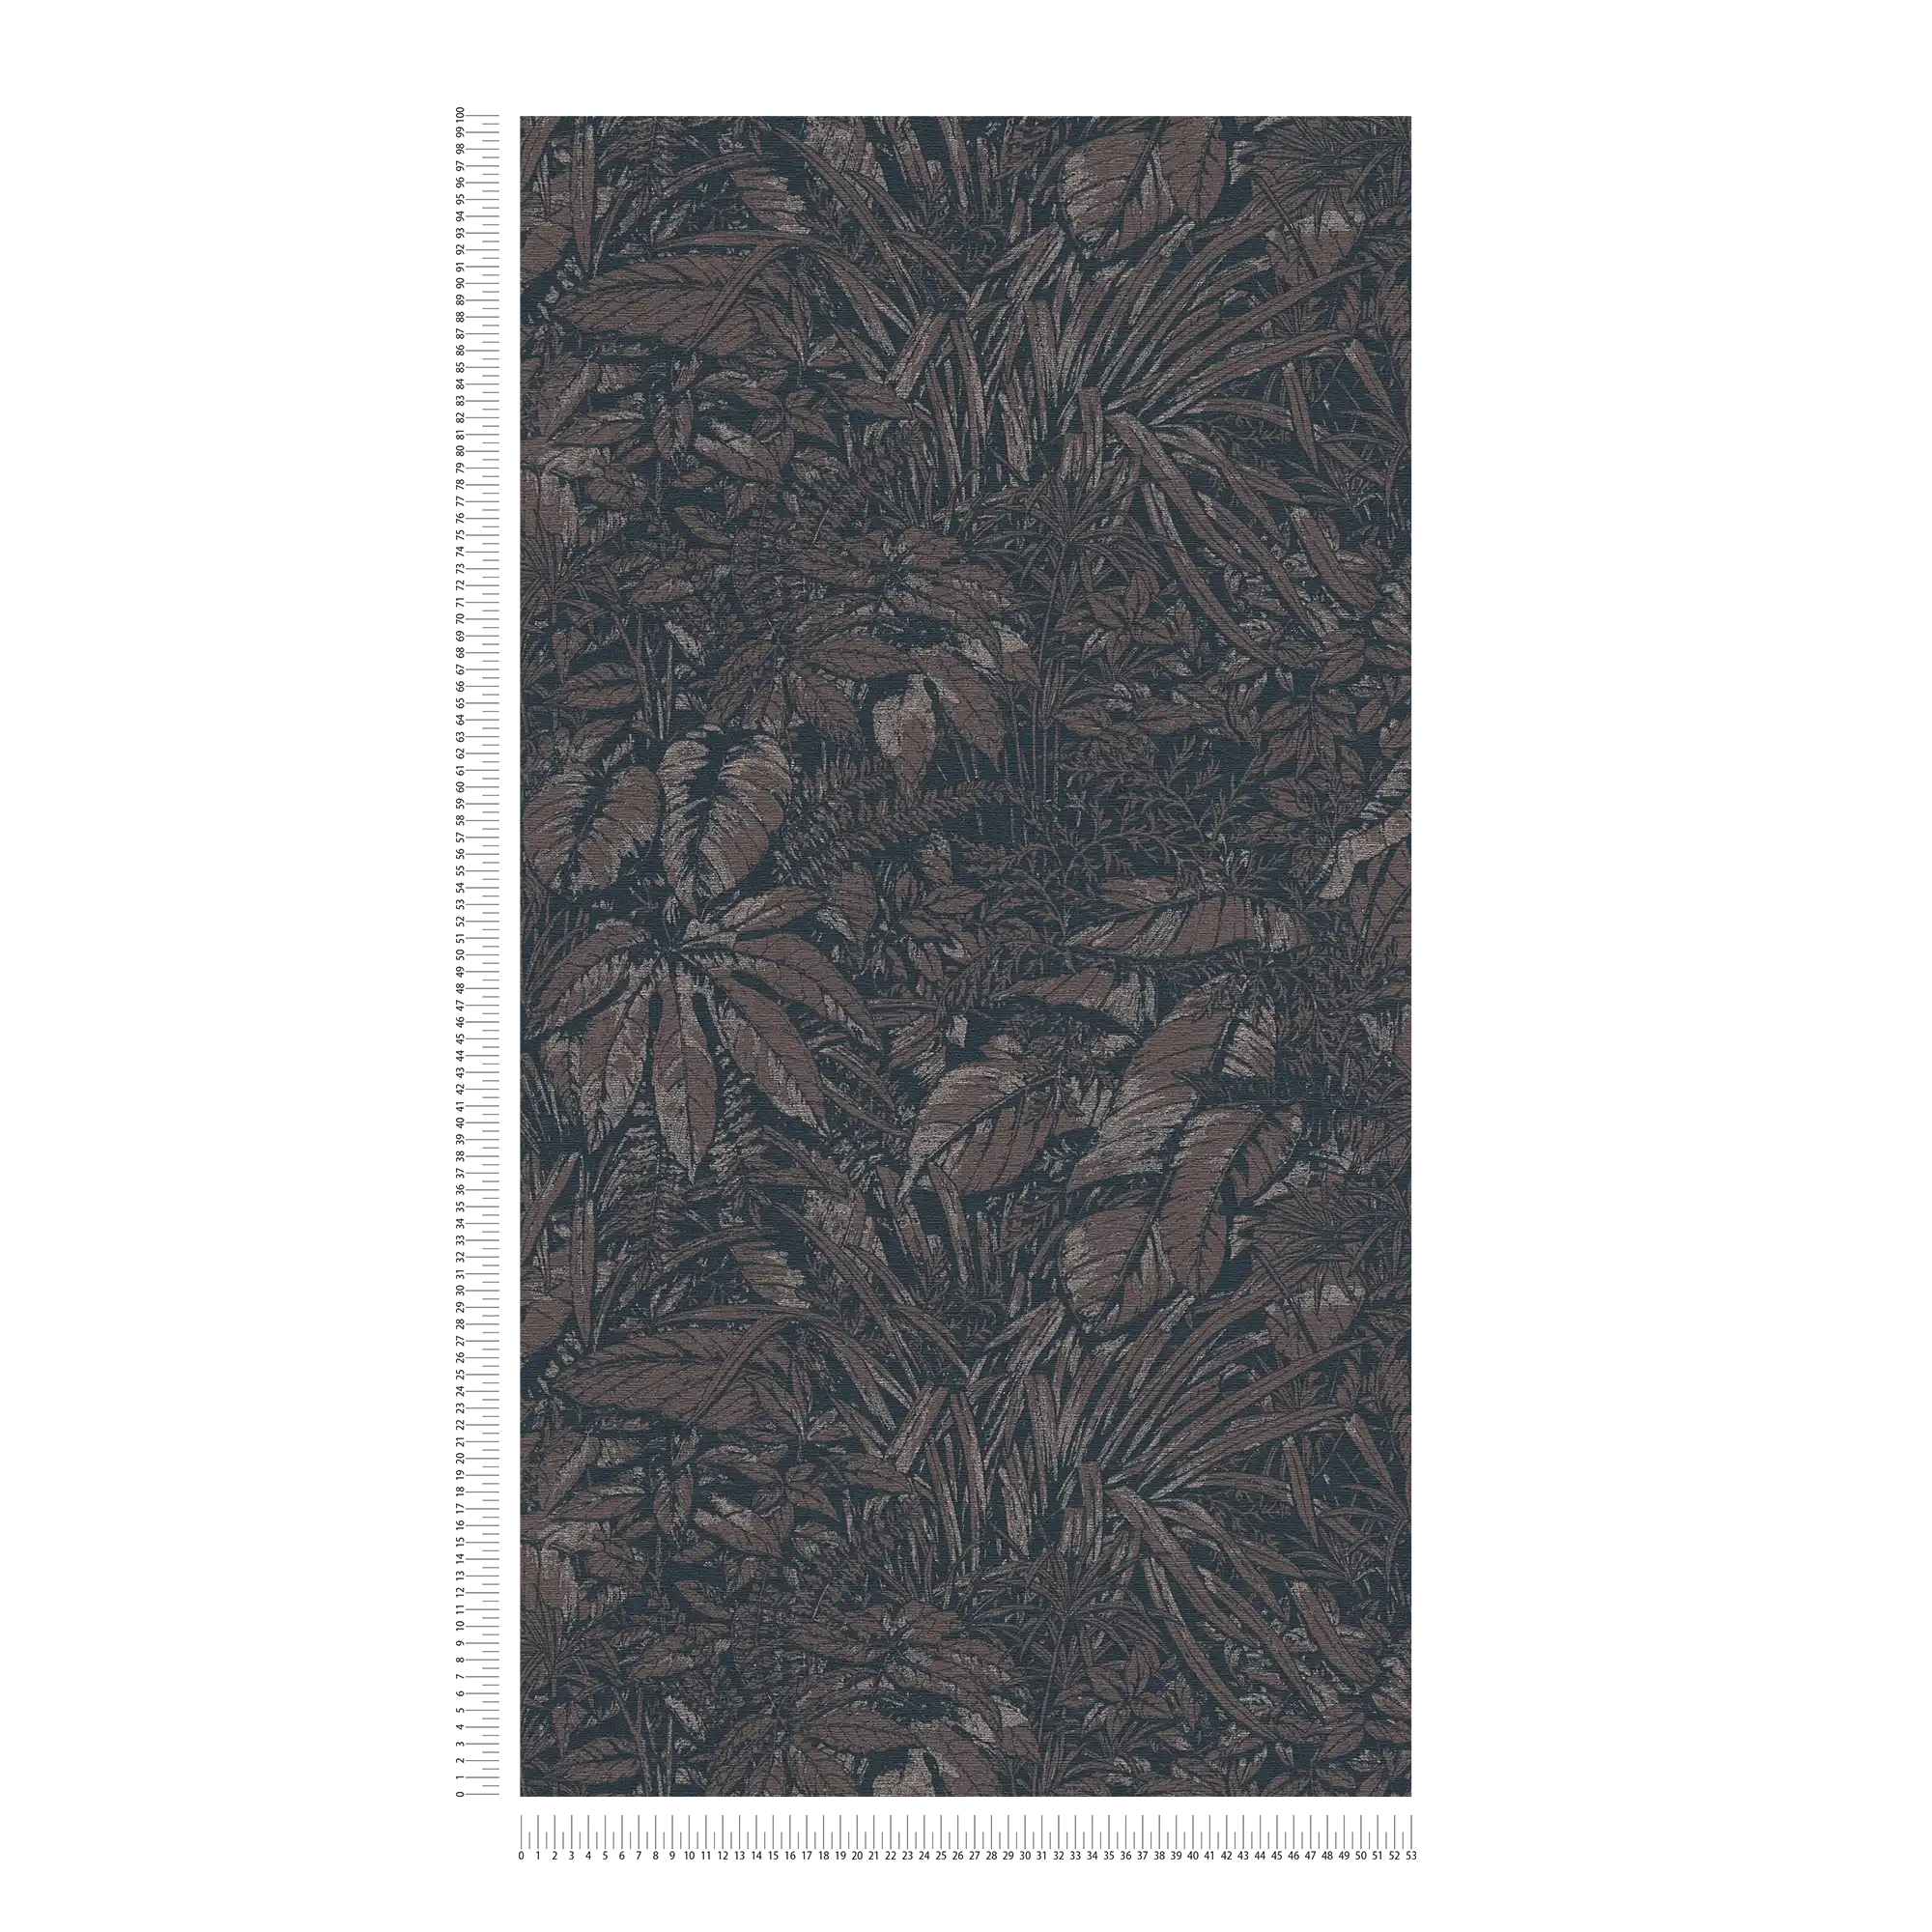             papier peint en papier jungle légèrement brillant avec motif de feuilles - marron, noir, argenté
        